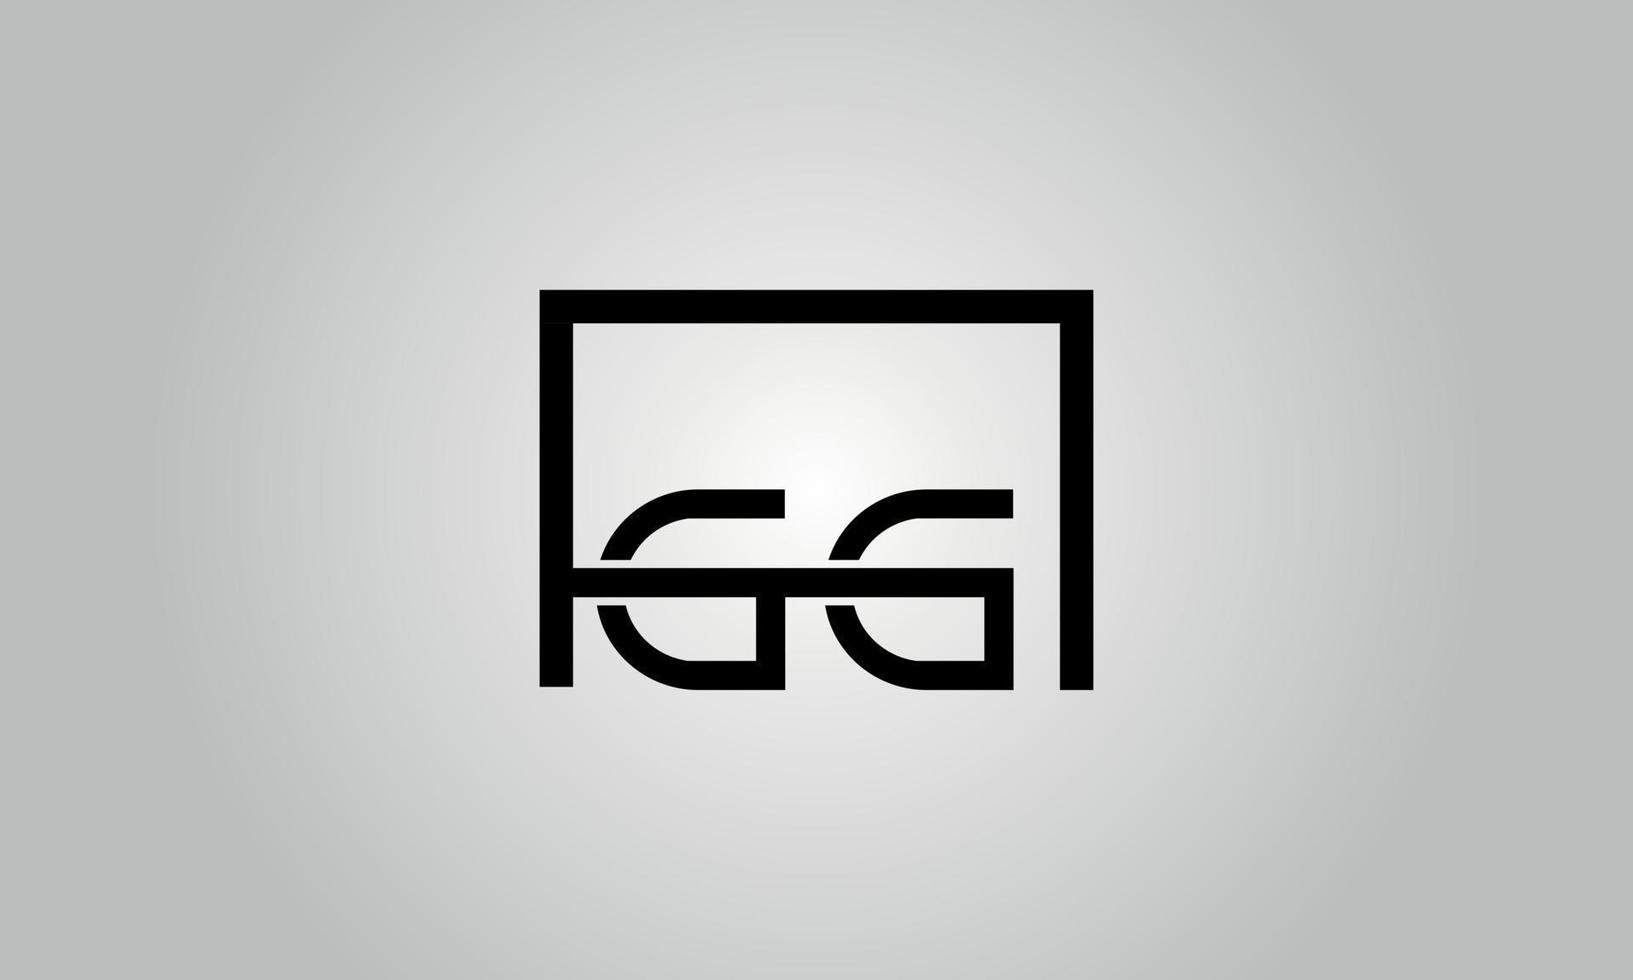 diseño del logotipo de la letra gg. logotipo de gg con forma cuadrada en colores negros vector plantilla de vector libre.